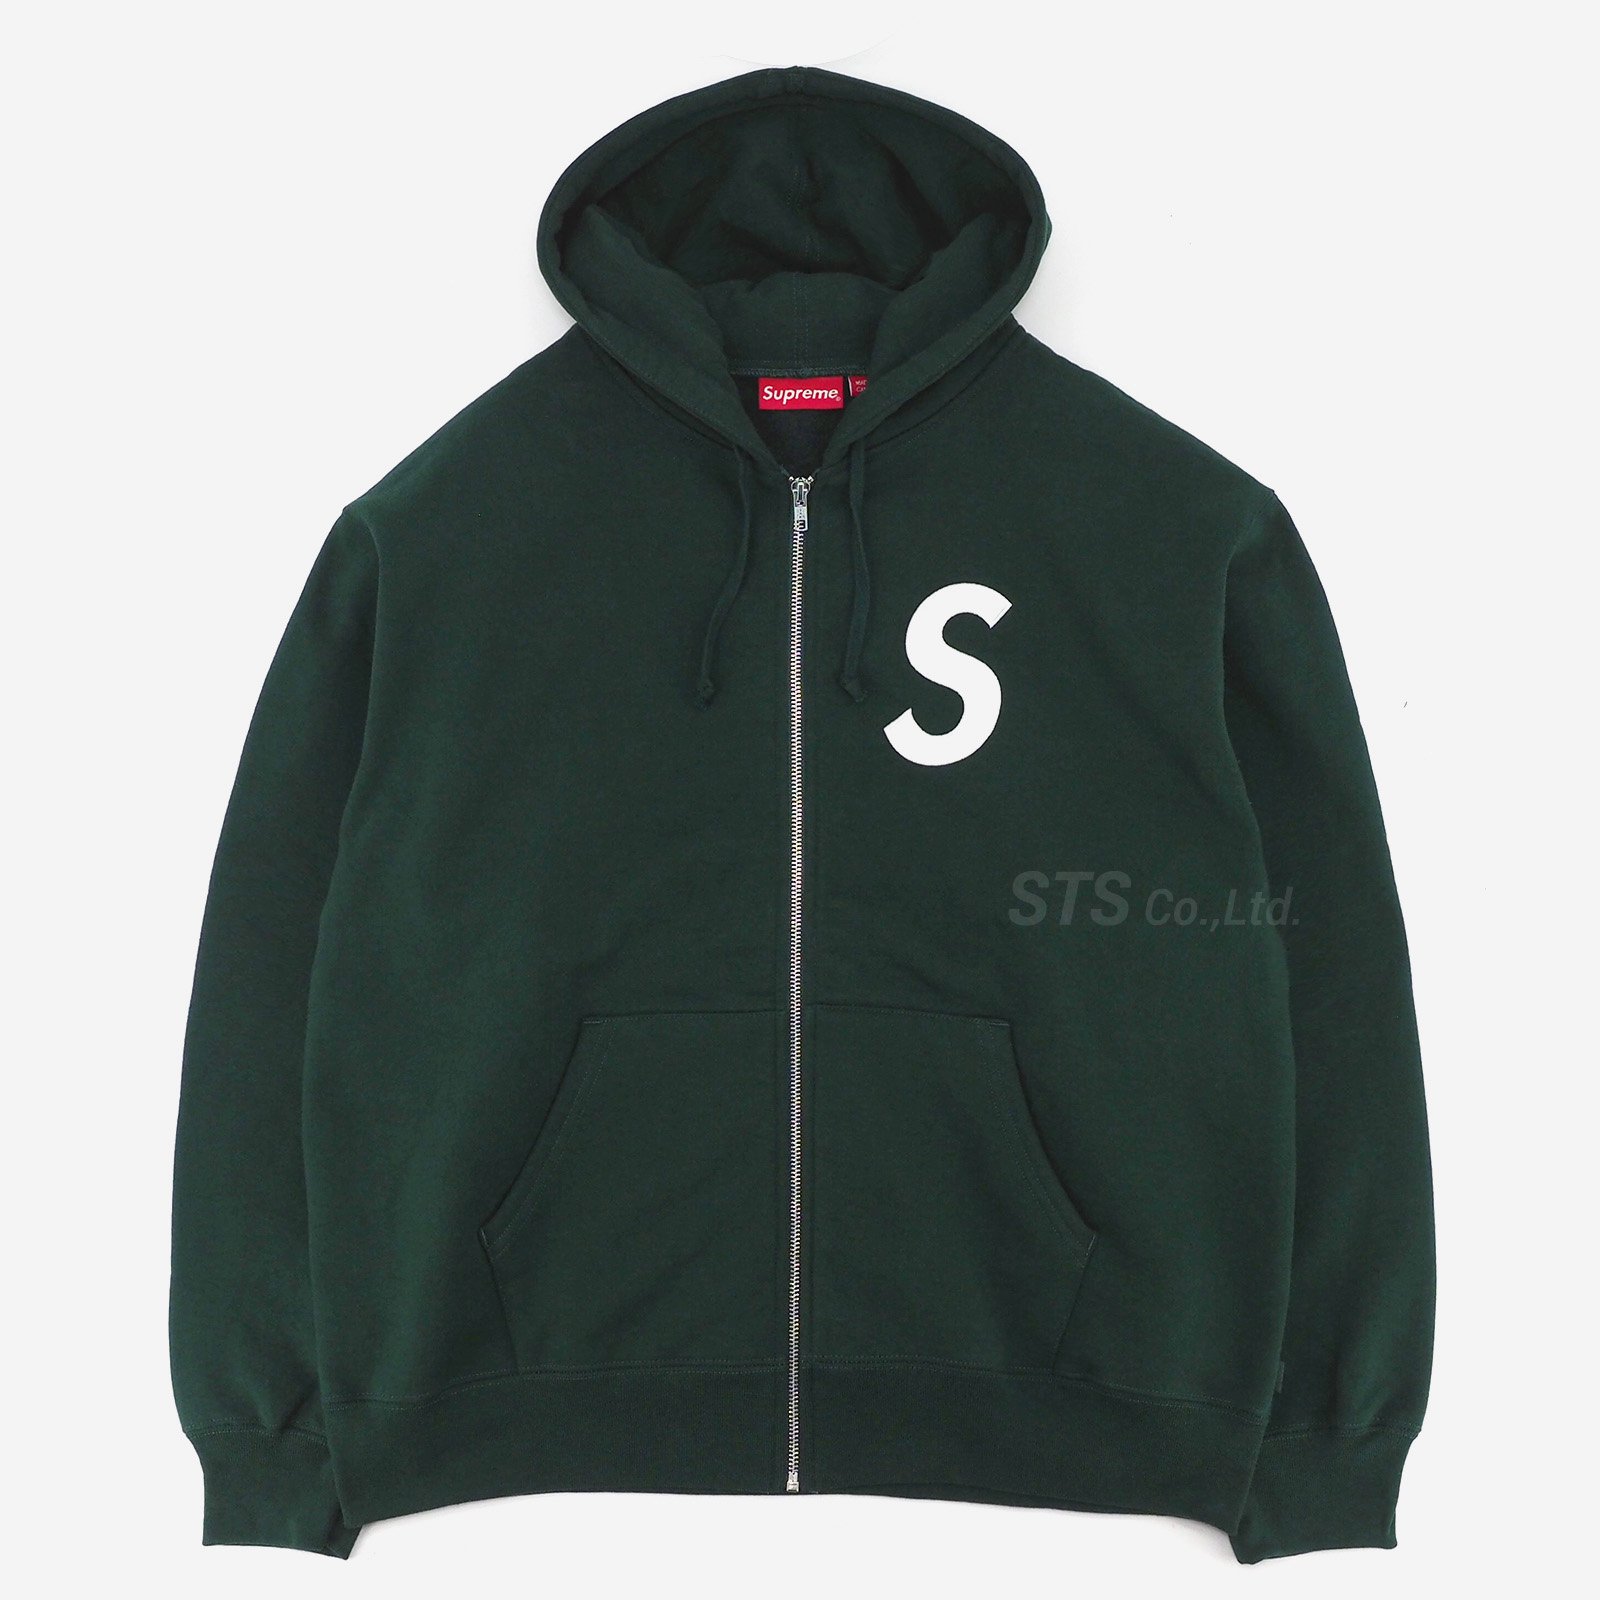 Supreme  S Logo Zip Up Hooded Sweatshirt2万円では無理ですか